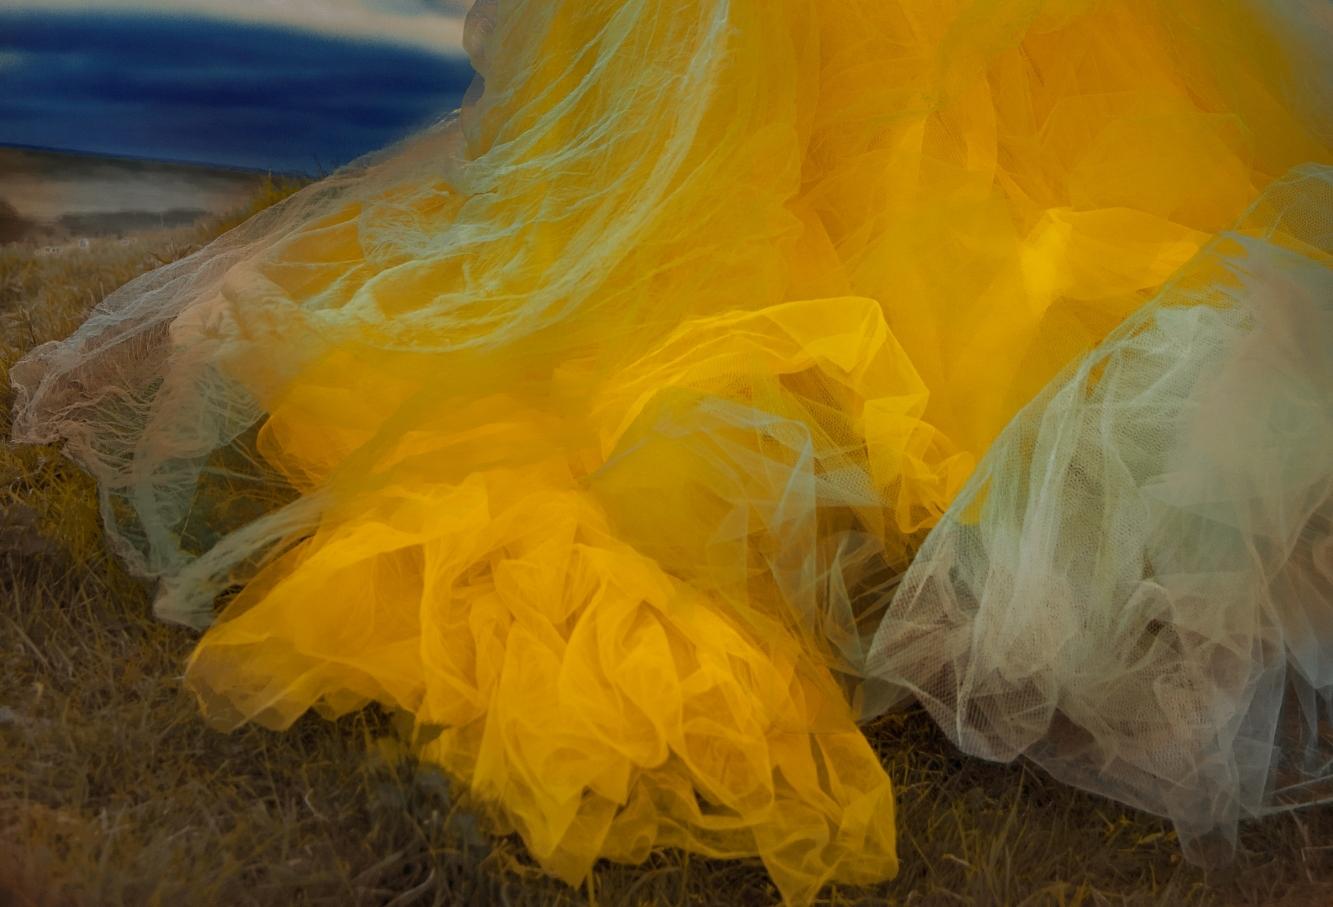 Not titled yet – Erik Madigan Heck, Fashion, Human, Art, Dress For Sale 3